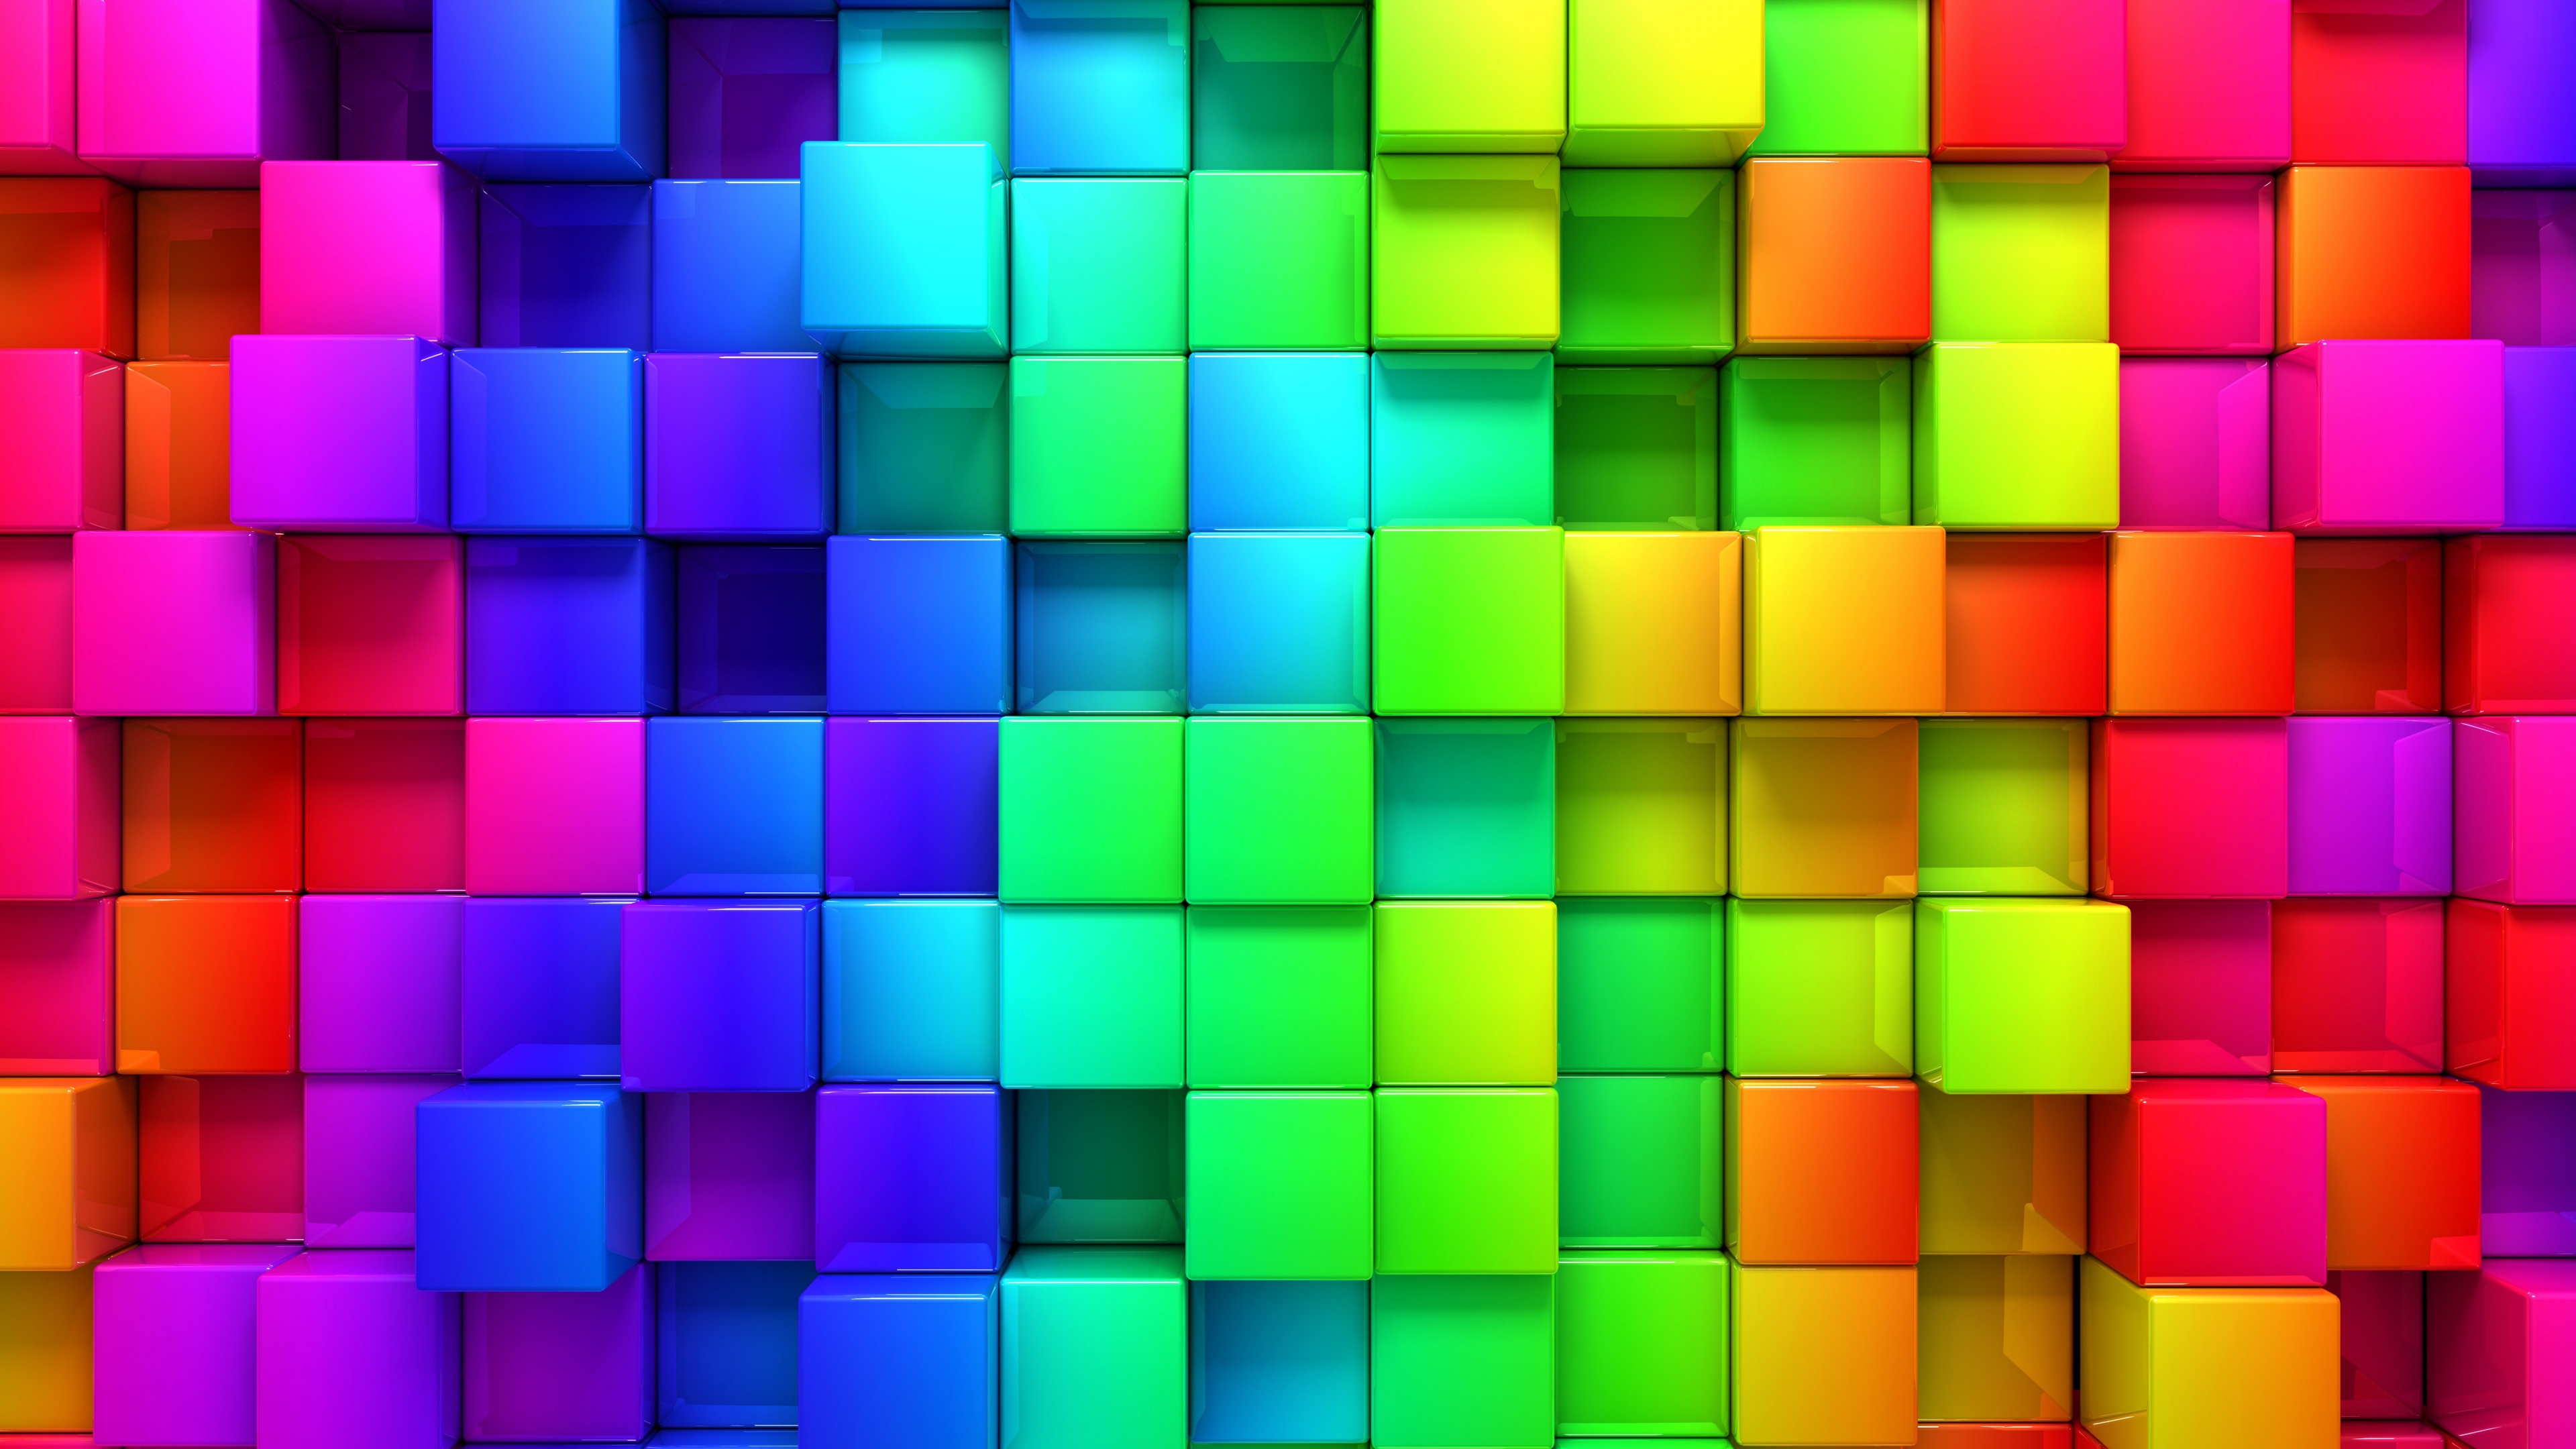 текстура, квадраты, цвета радуги, яркие красивые обои на рабочий стол, Texture, squares, rainbow colors, bright beautiful wallpaper on your desktop, Ultra HD